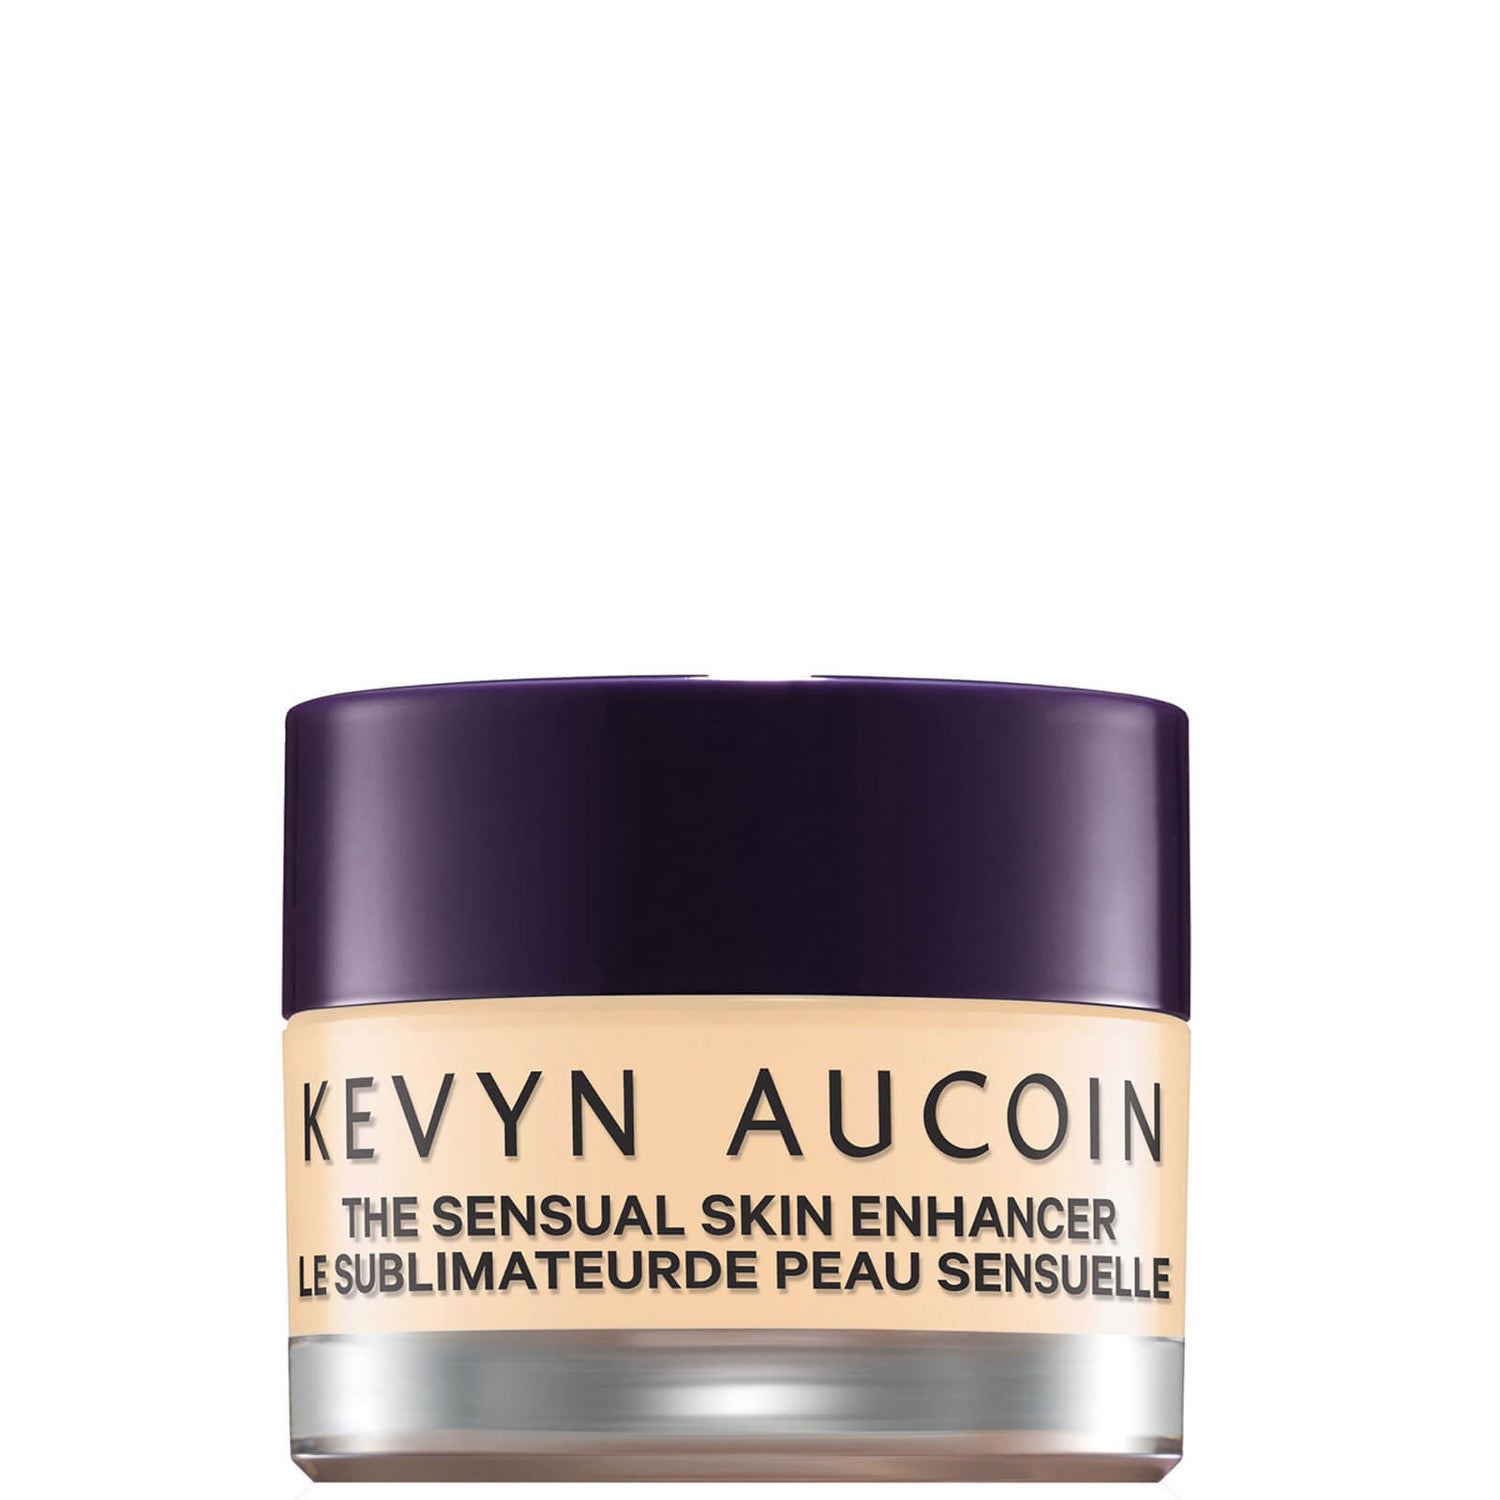 Kevyn Aucoin The Sensual Skin Enhancer 10g (Various Shades)